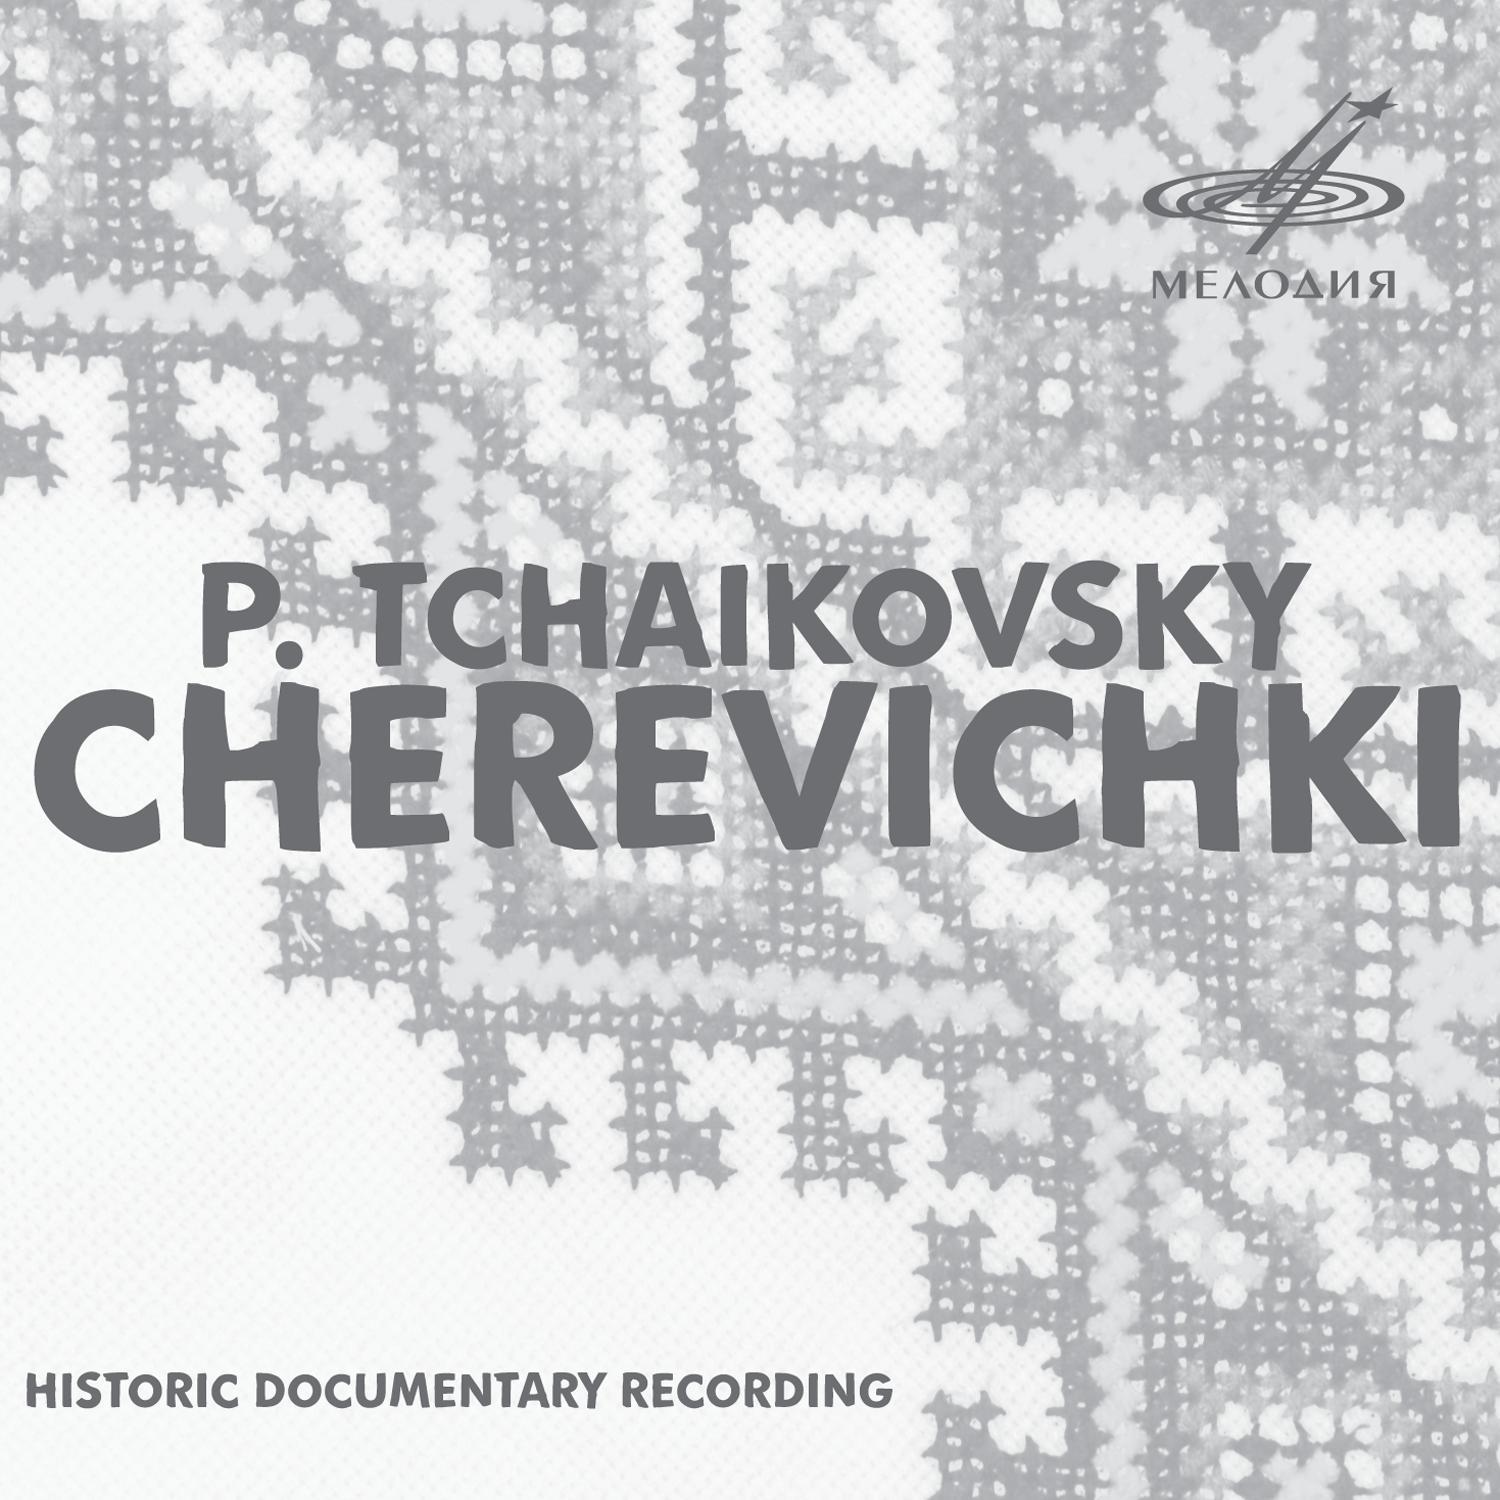 Alexander Melik-Pashayev - Cherevichki, Act I, Scene II: Final Scene 